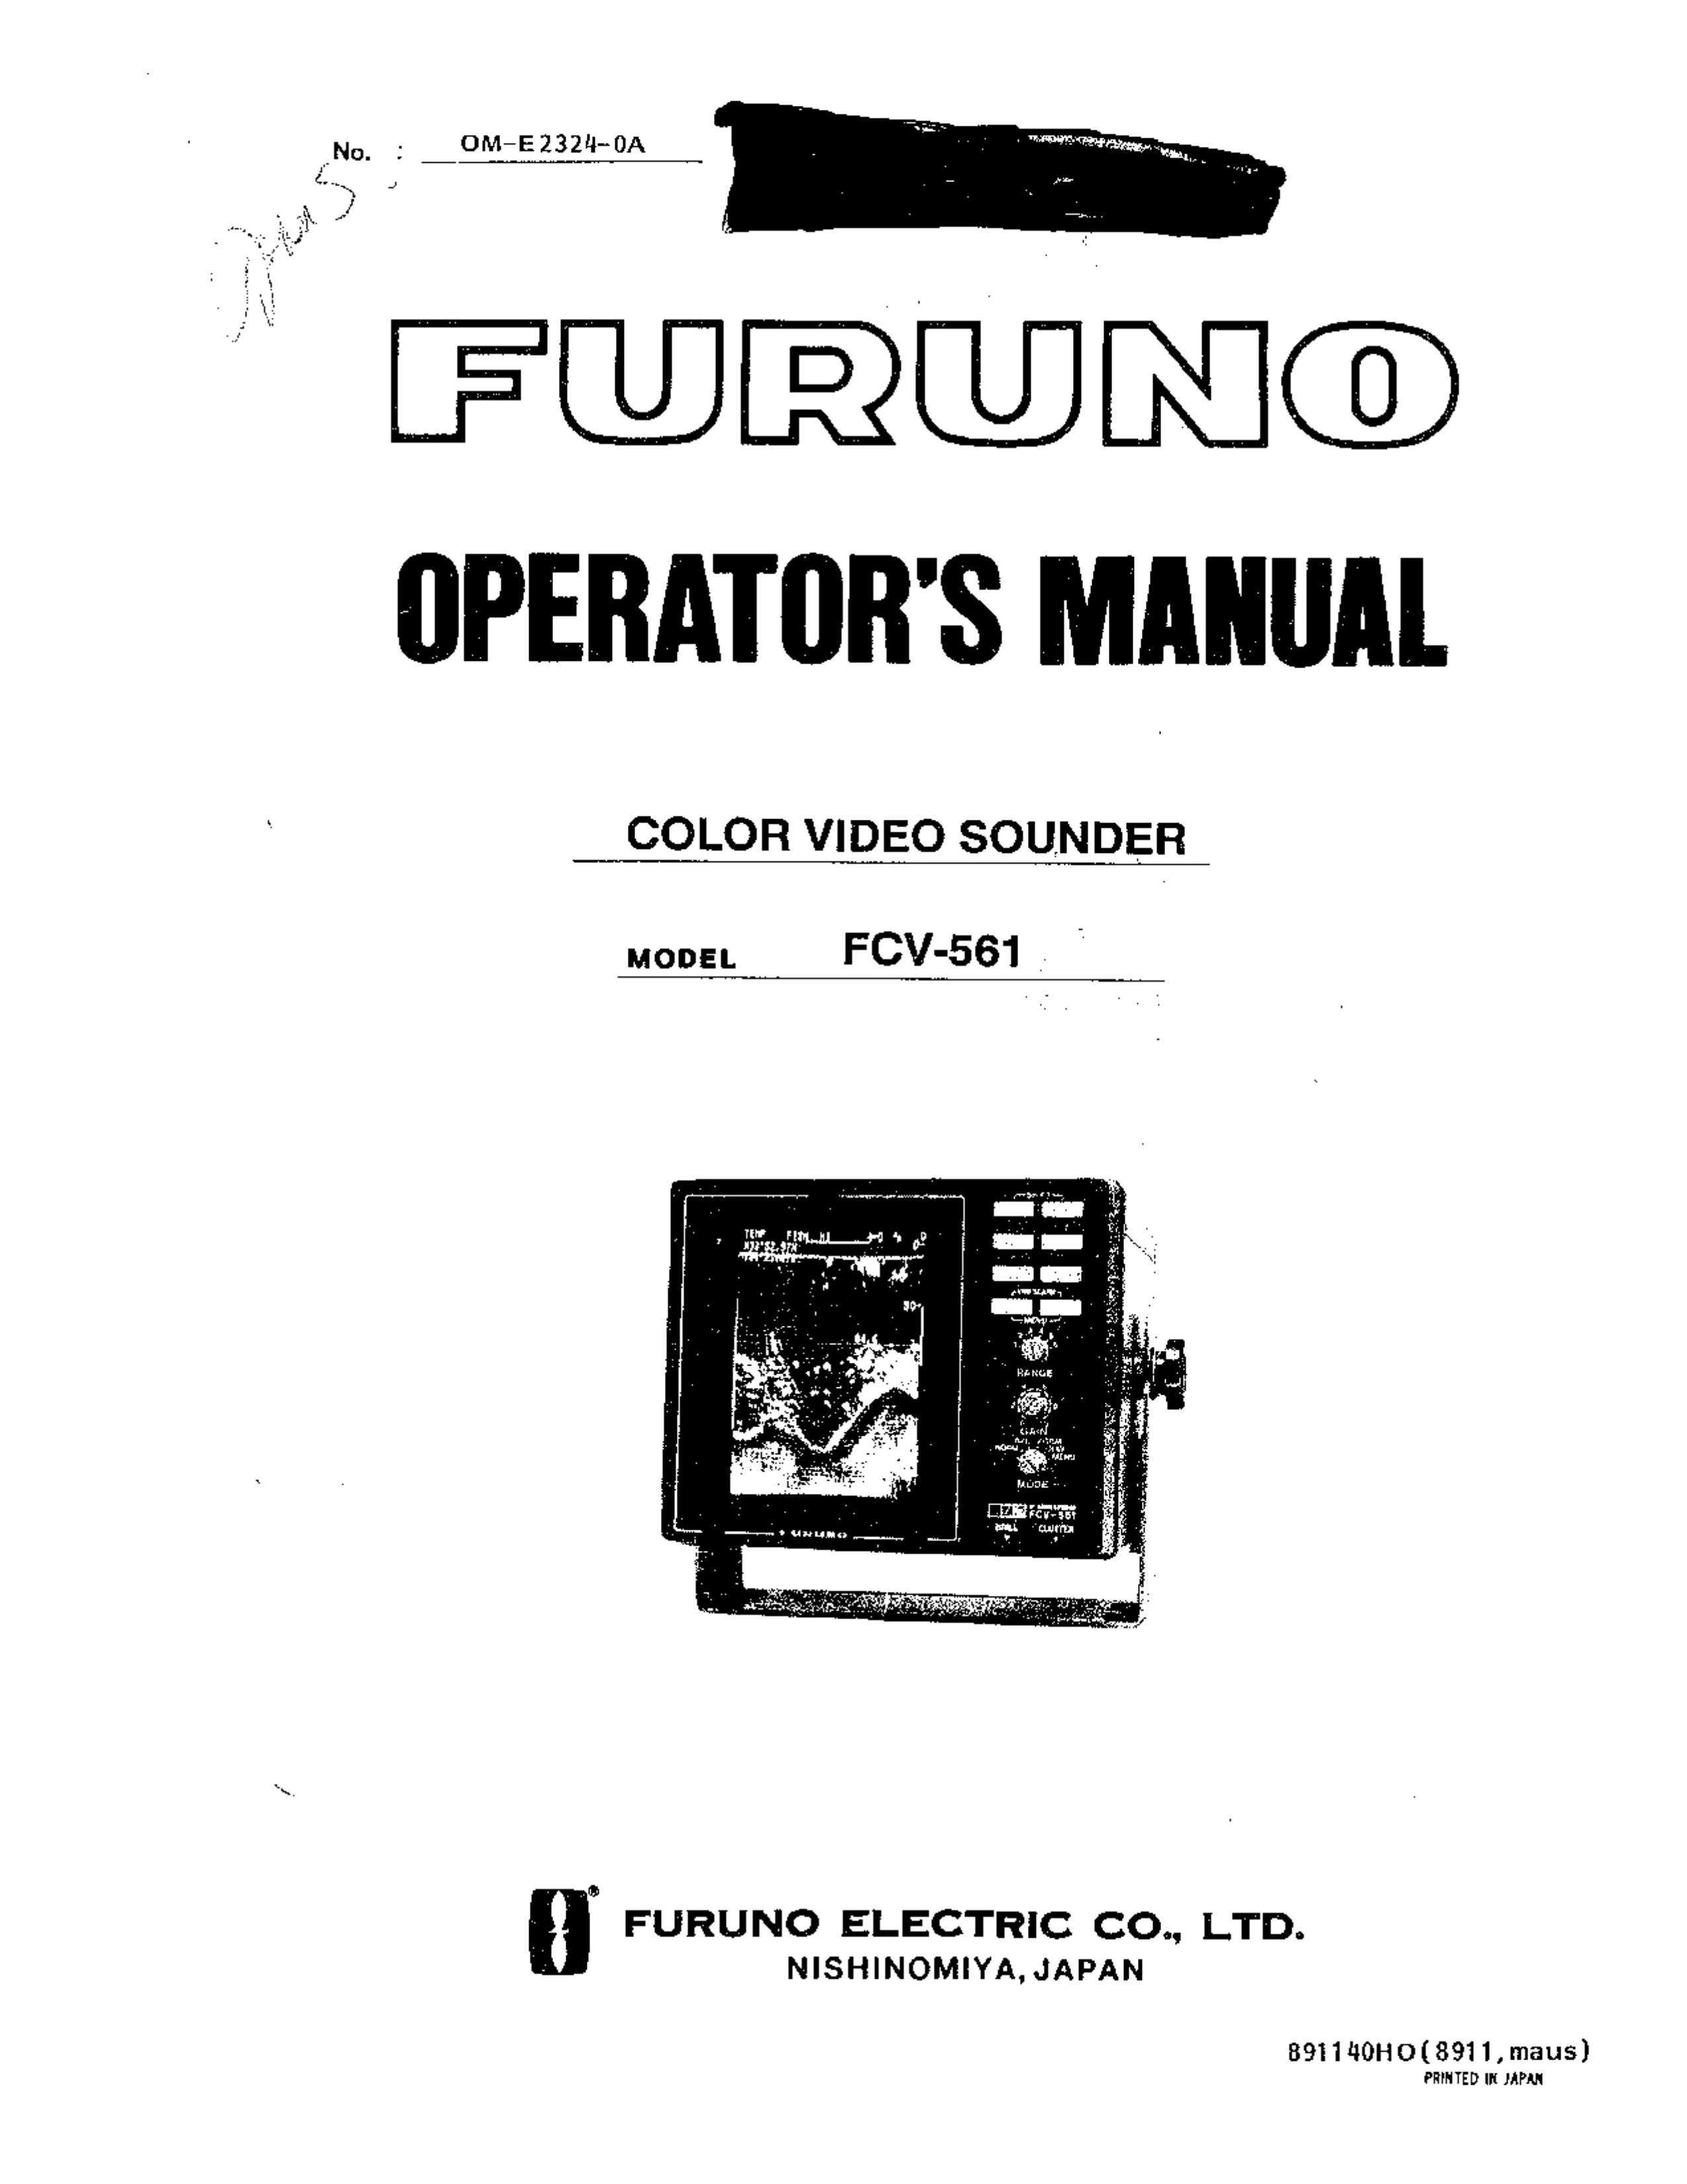 Furuno FCV-561 Backyard Playset User Manual